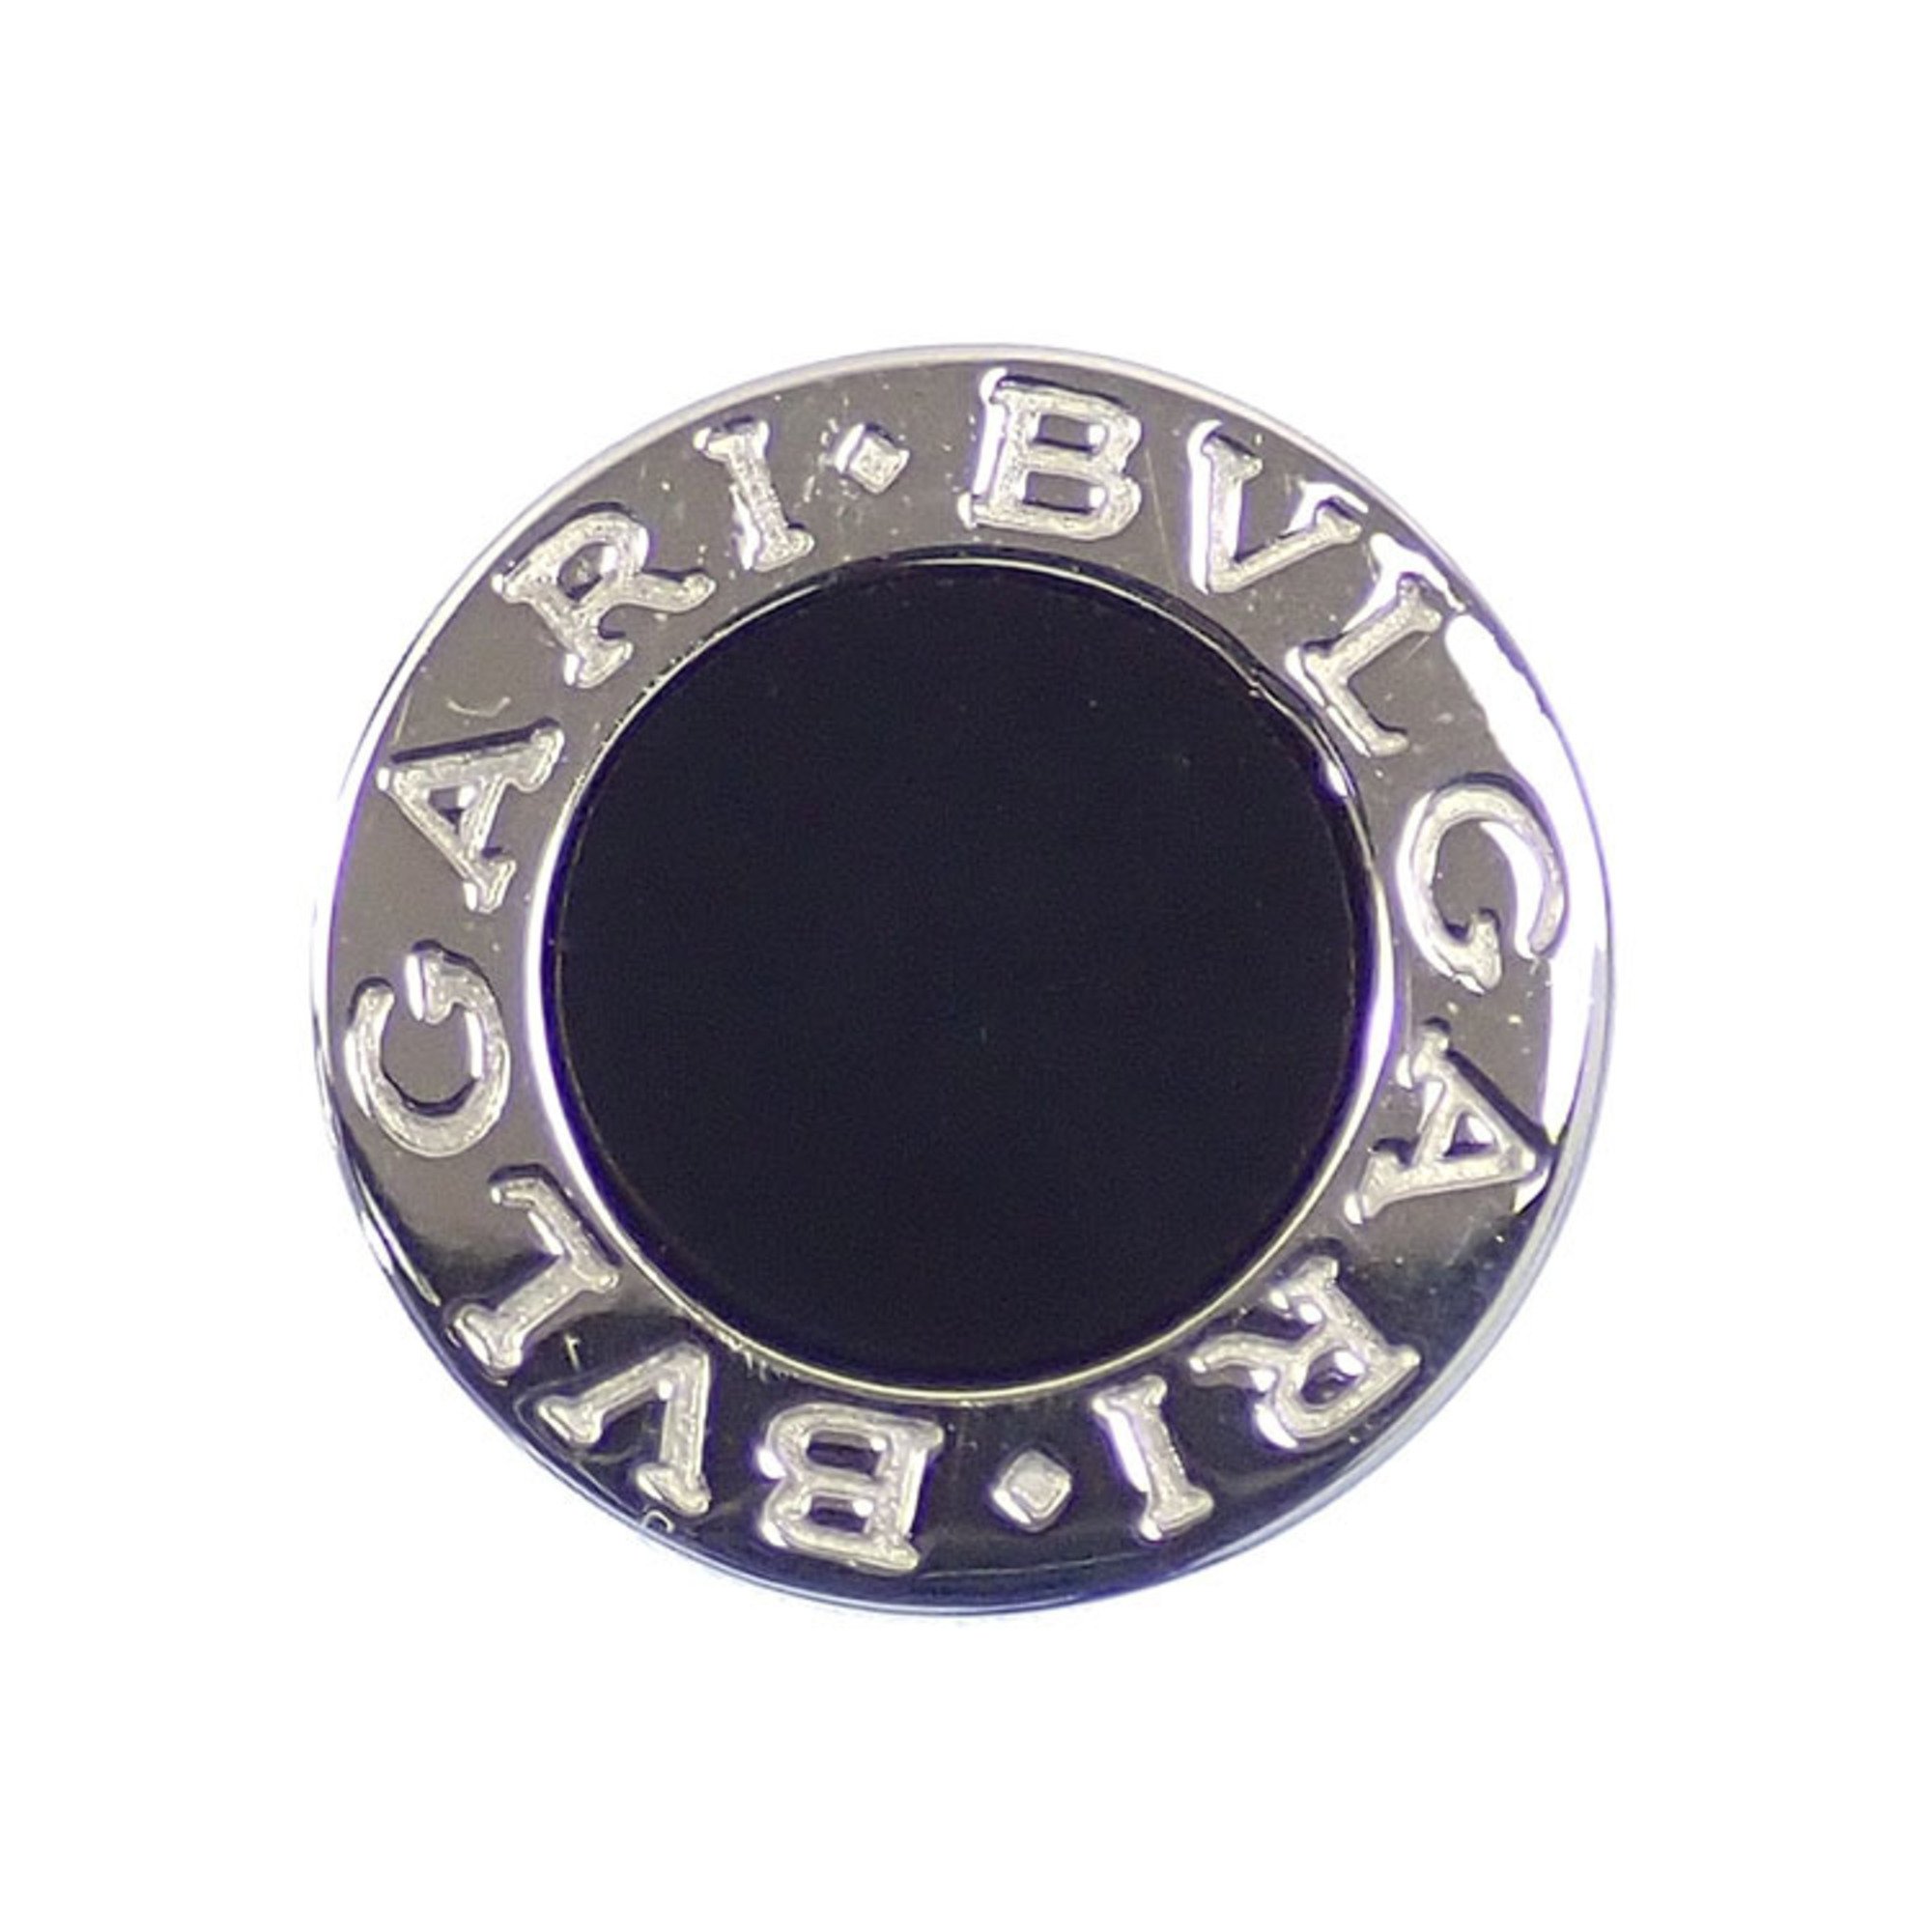 Bvlgari Earrings Small Stud for Women Onyx K18WG 3.1g 18K White Gold 750 319455